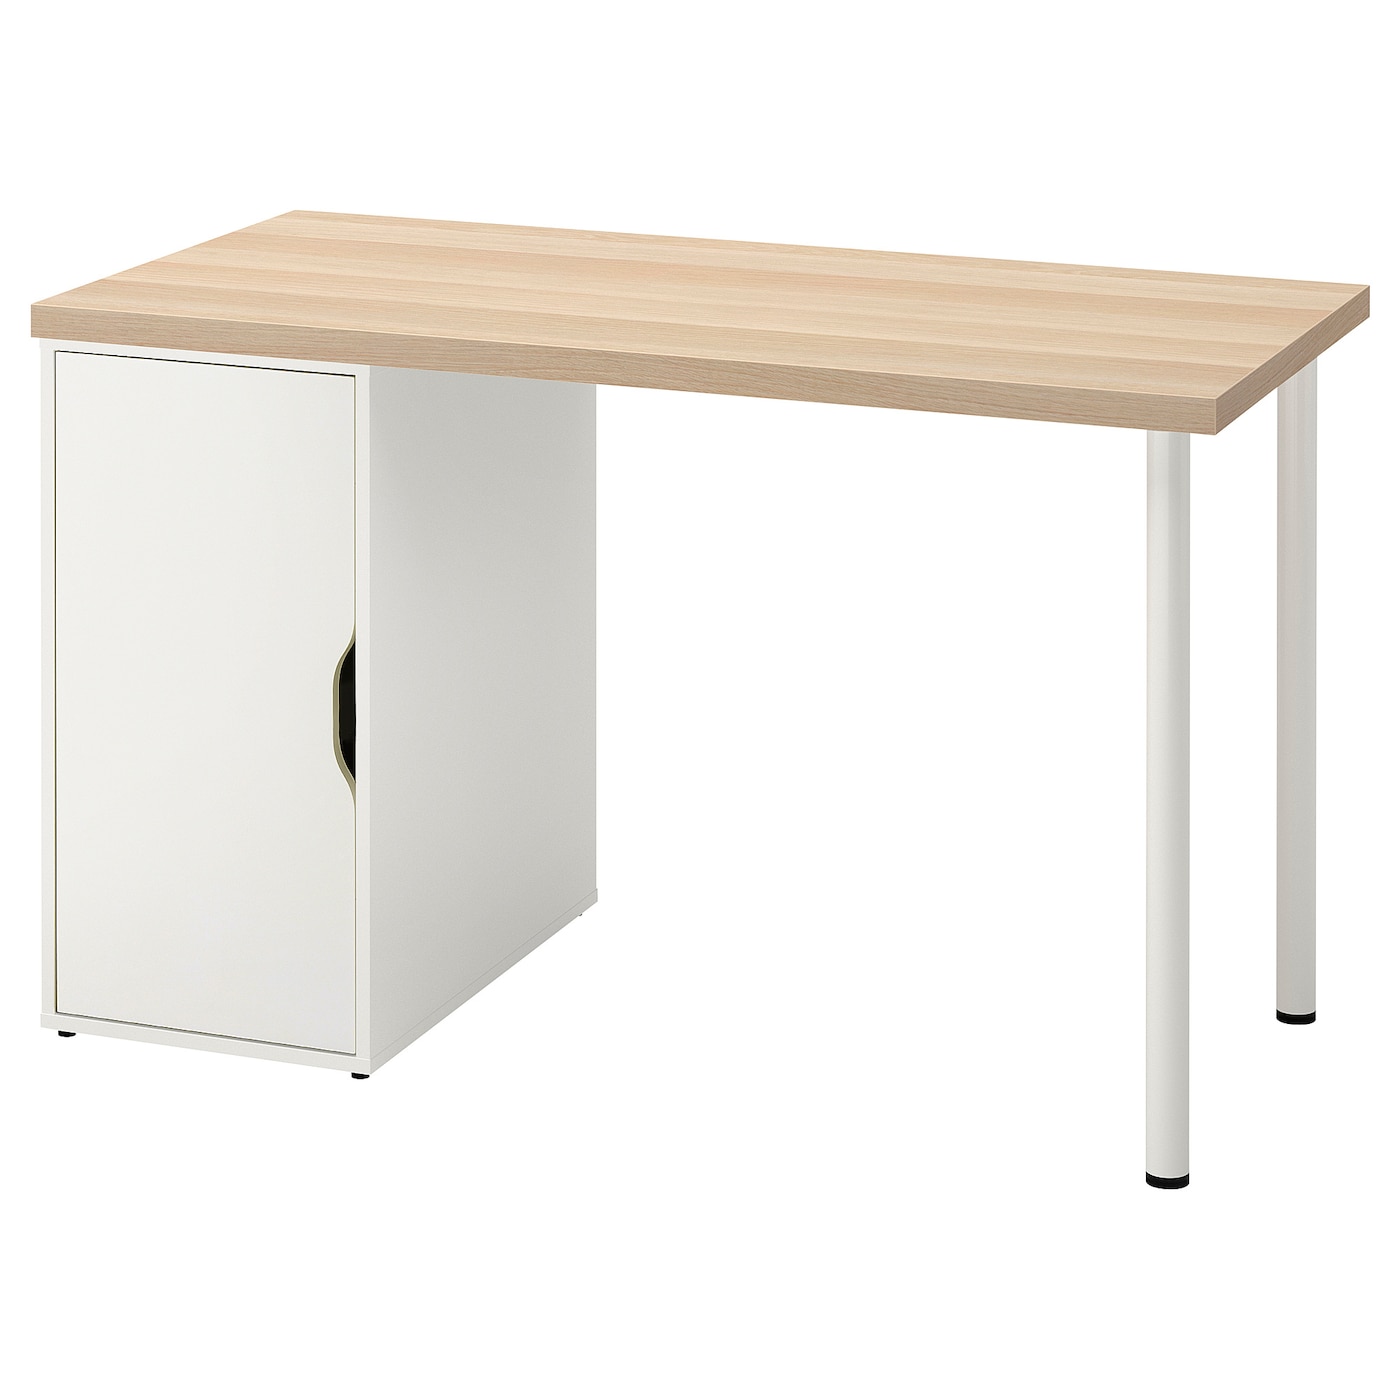 Письменный стол с ящиком - IKEA LAGKAPTEN/ALEX, 120х60 см, под беленый дуб/белый, ЛАГКАПТЕН/АЛЕКС ИКЕА